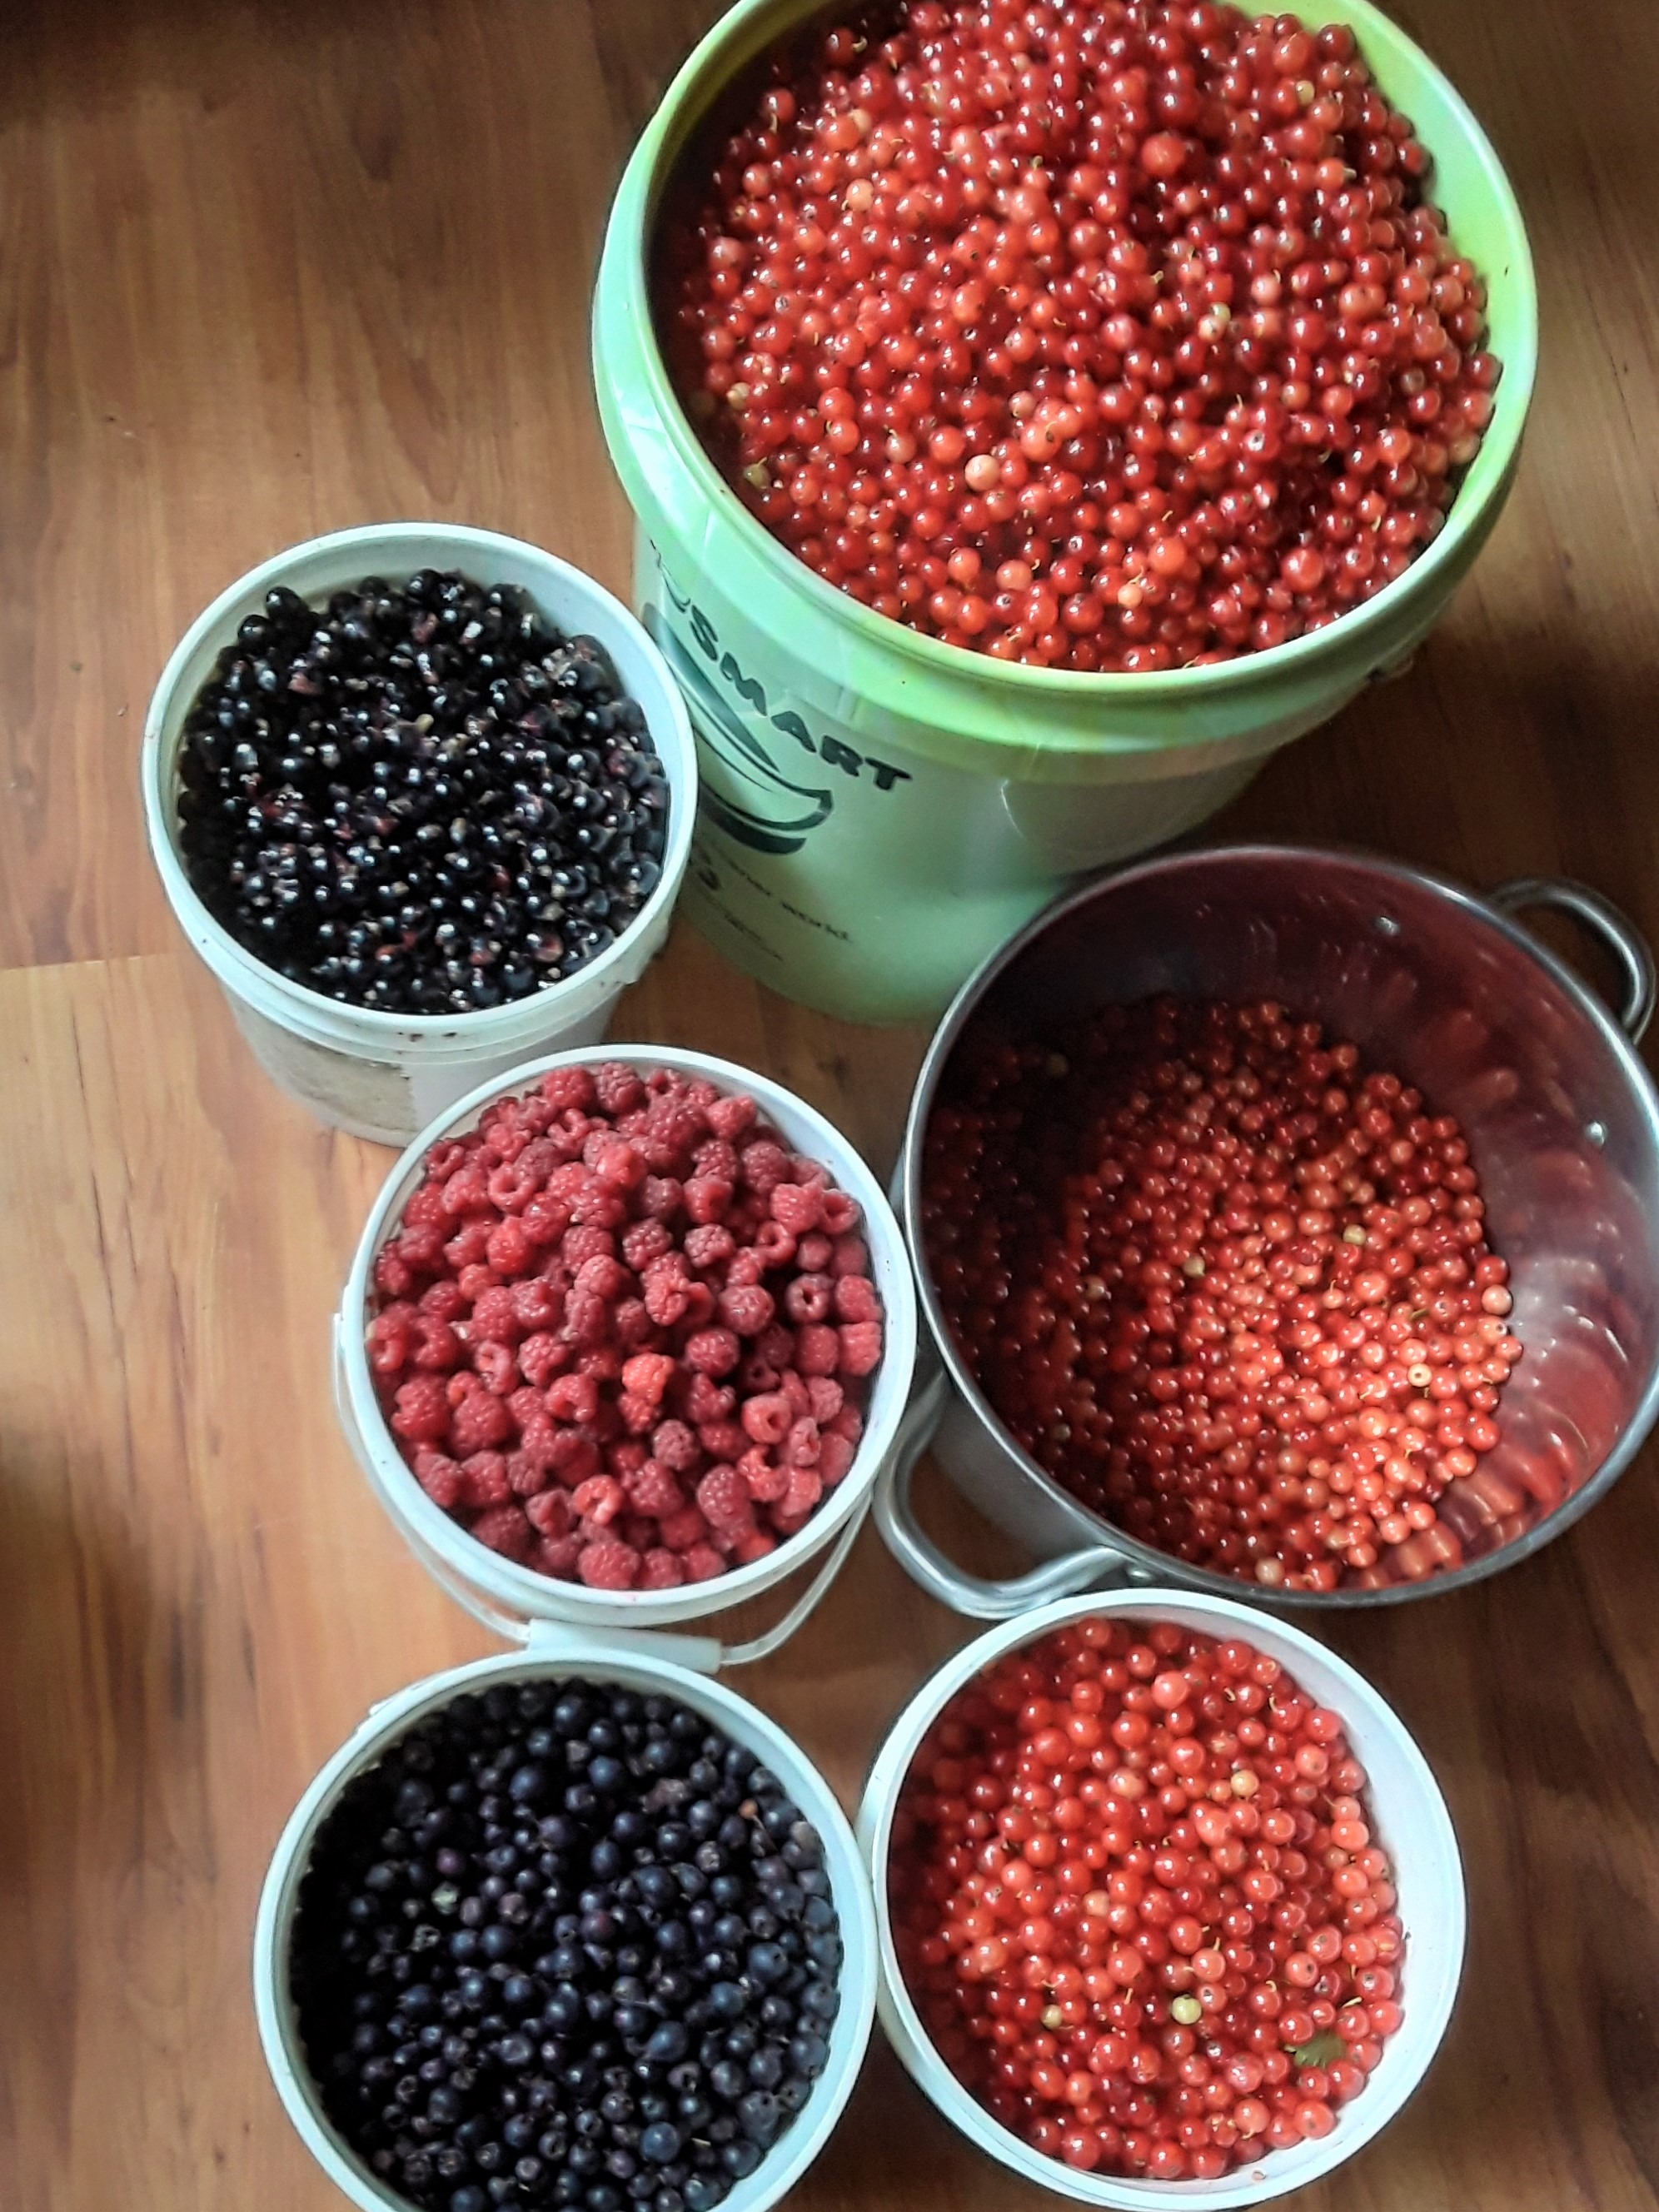 Alaska grown berries